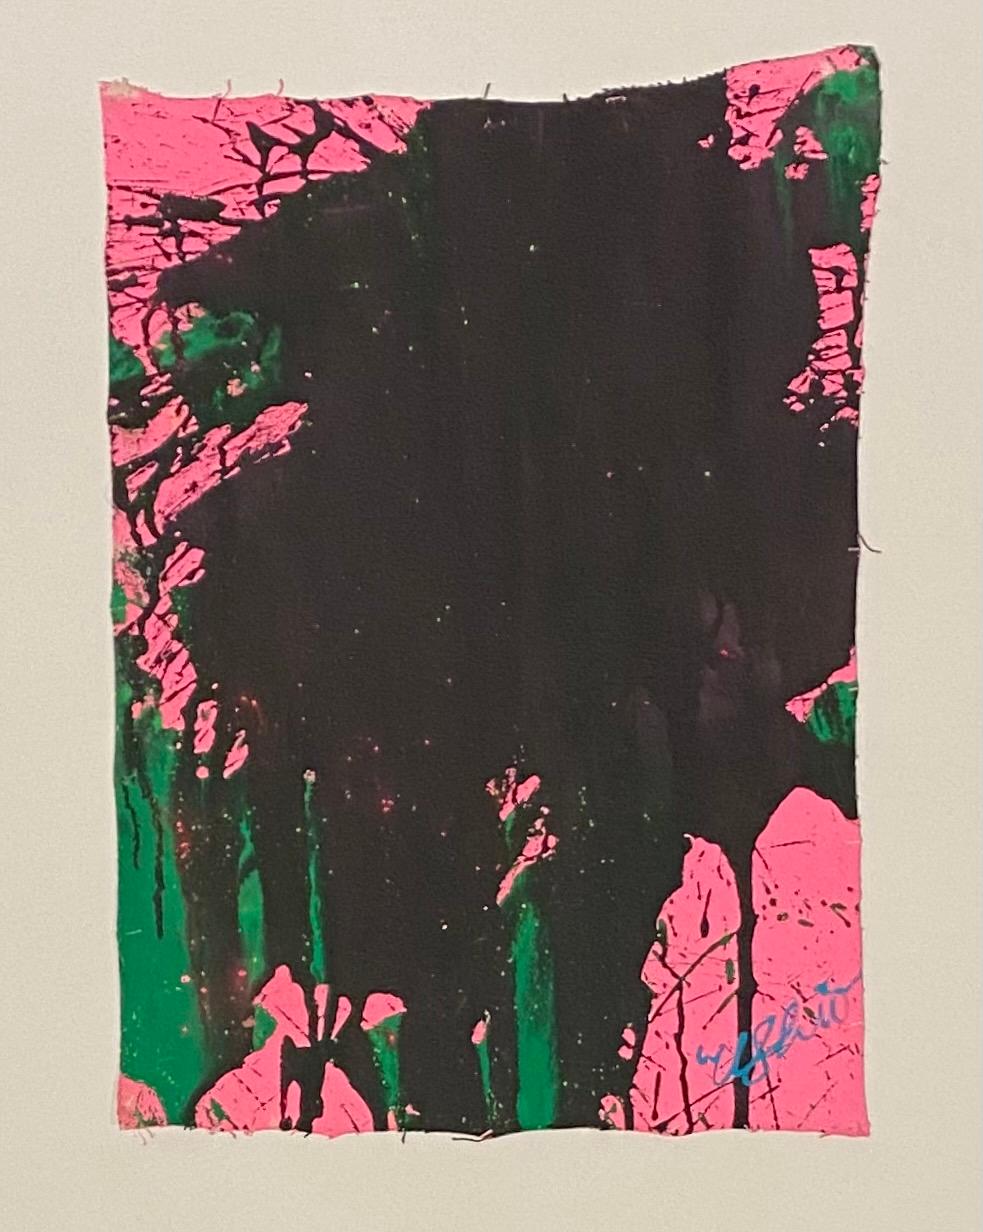 Abstract Painting Ushio Shinohara - « vert émeraude et noir sur rose pastel », acrylique sur toile - peinture abstraite